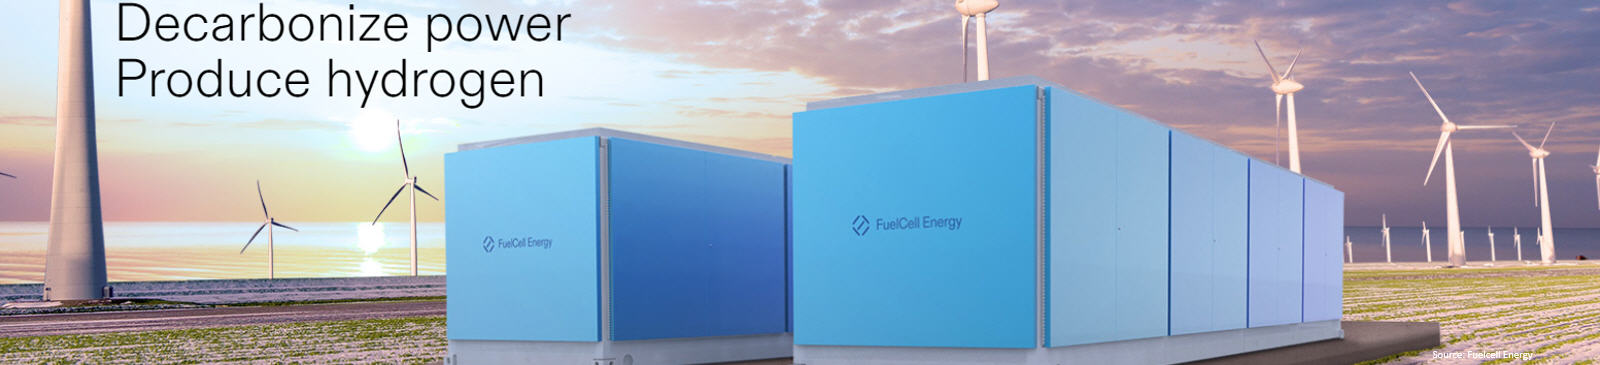 Nieuws dat de koers van het aandeel FCEL (Fuelcell stock) kan beïnvloeden.